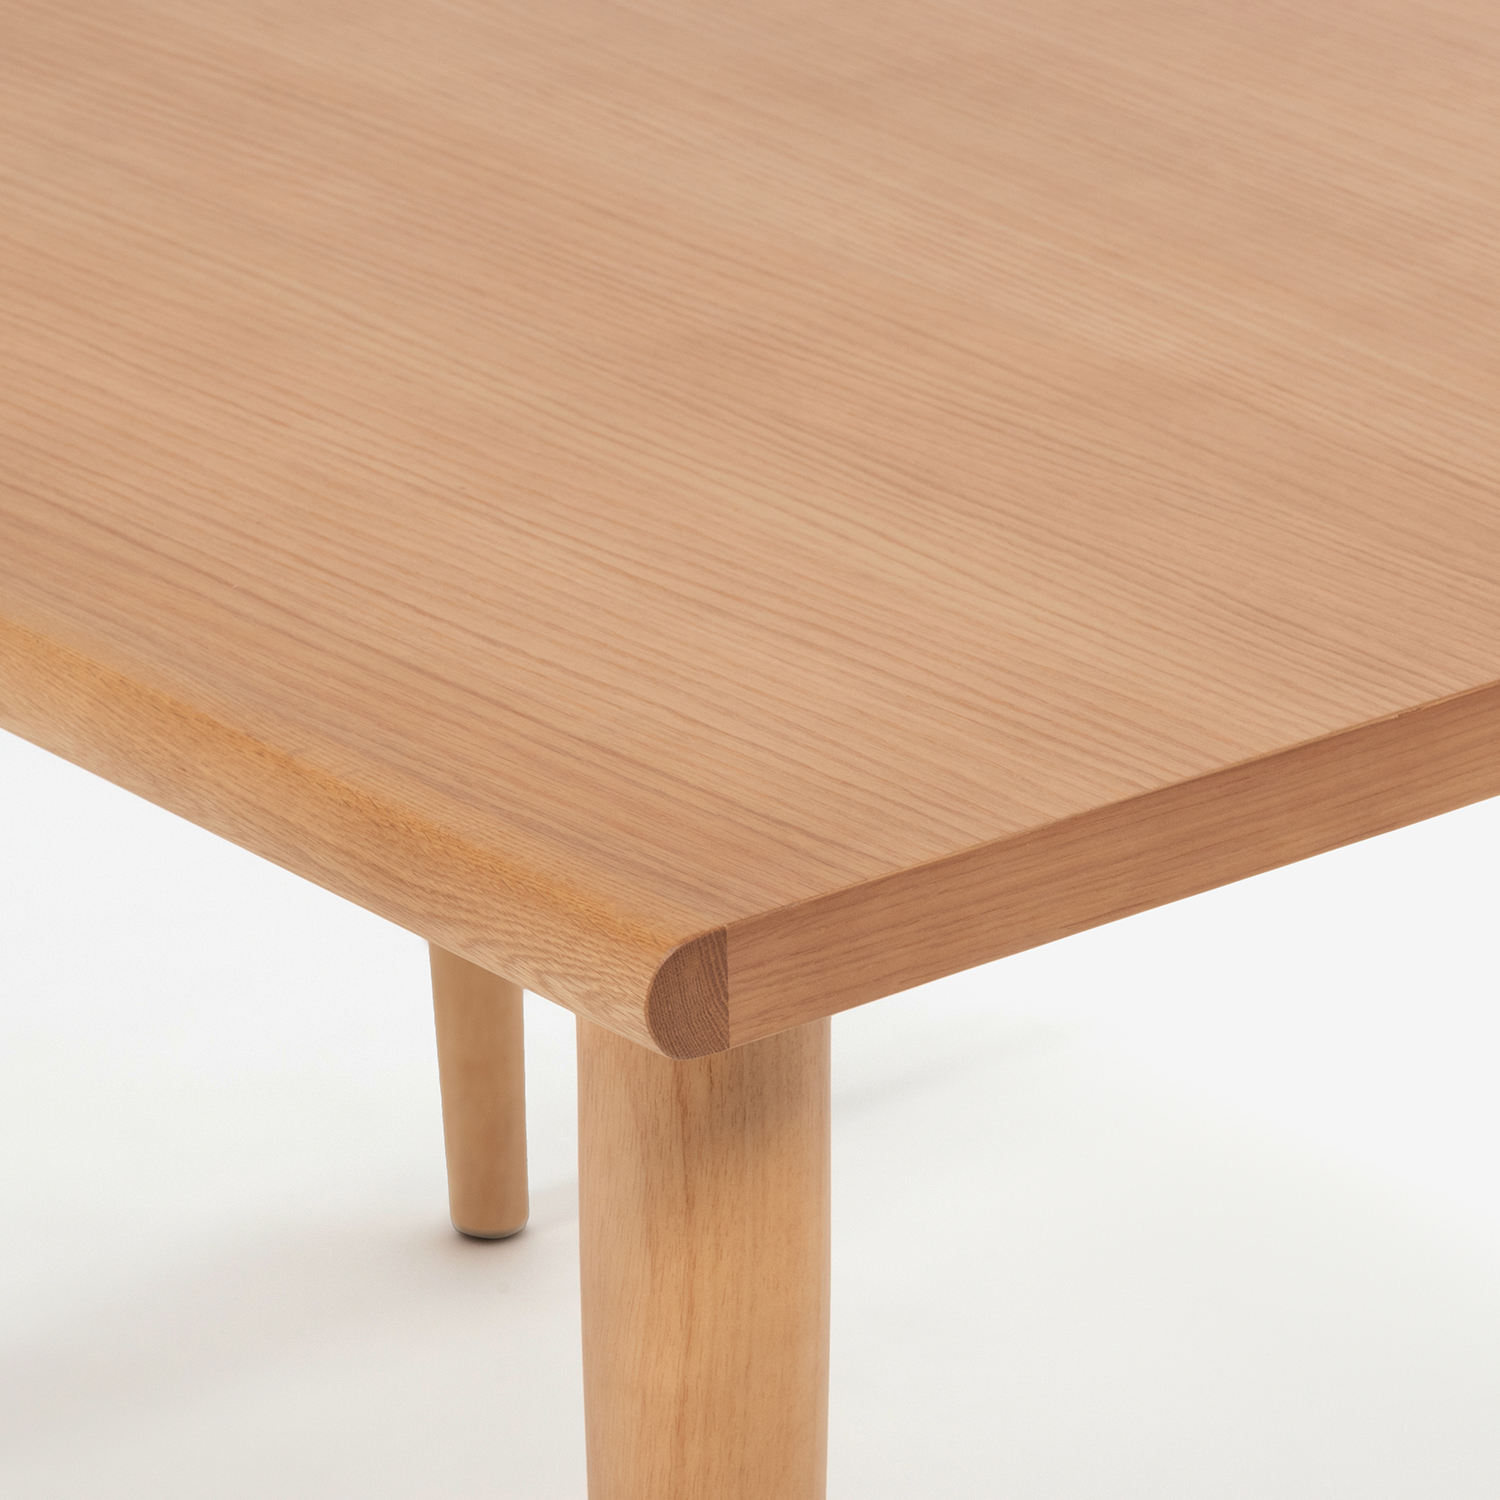 ダイニングテーブル「ユノ3」レッドオーク材 ホワイトオーク色 丸脚 全3サイズ